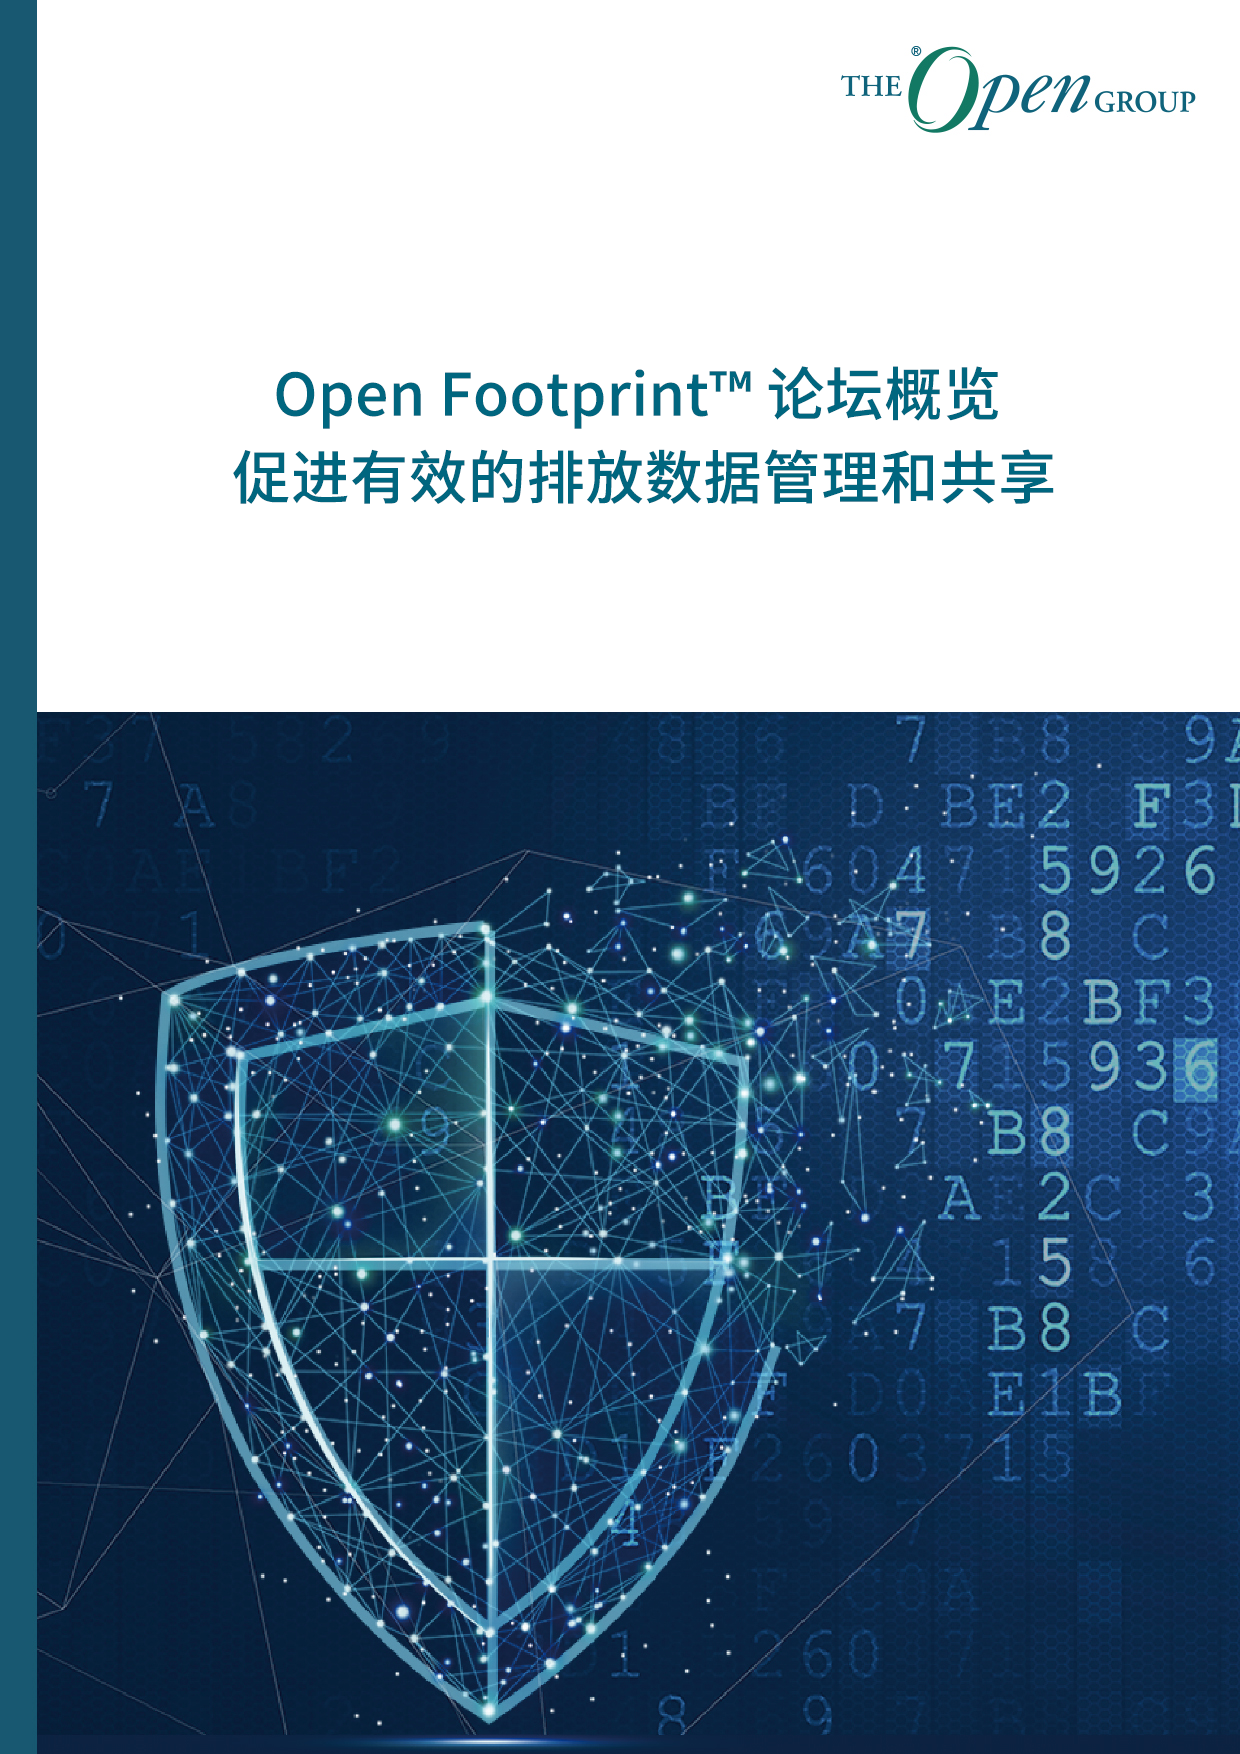 Open Footprint™ 论坛概览： 促进有效的排放数据管理和共享